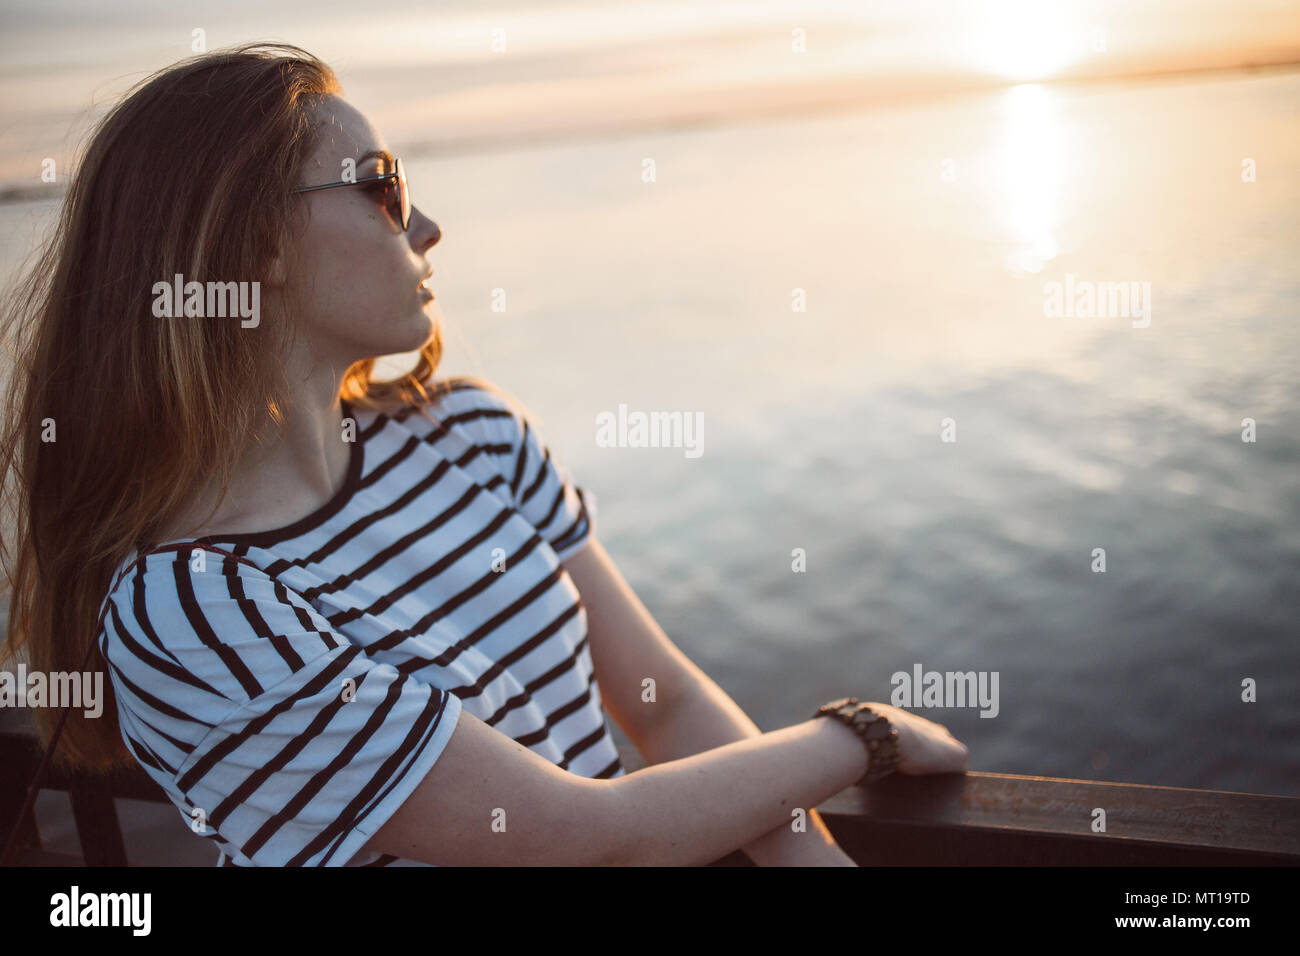 Une jeune femme cherche à le coucher du soleil sur une mer ou une rivière avec de beaux reflets de soleil dans l'eau douce. Soft focus. Banque D'Images